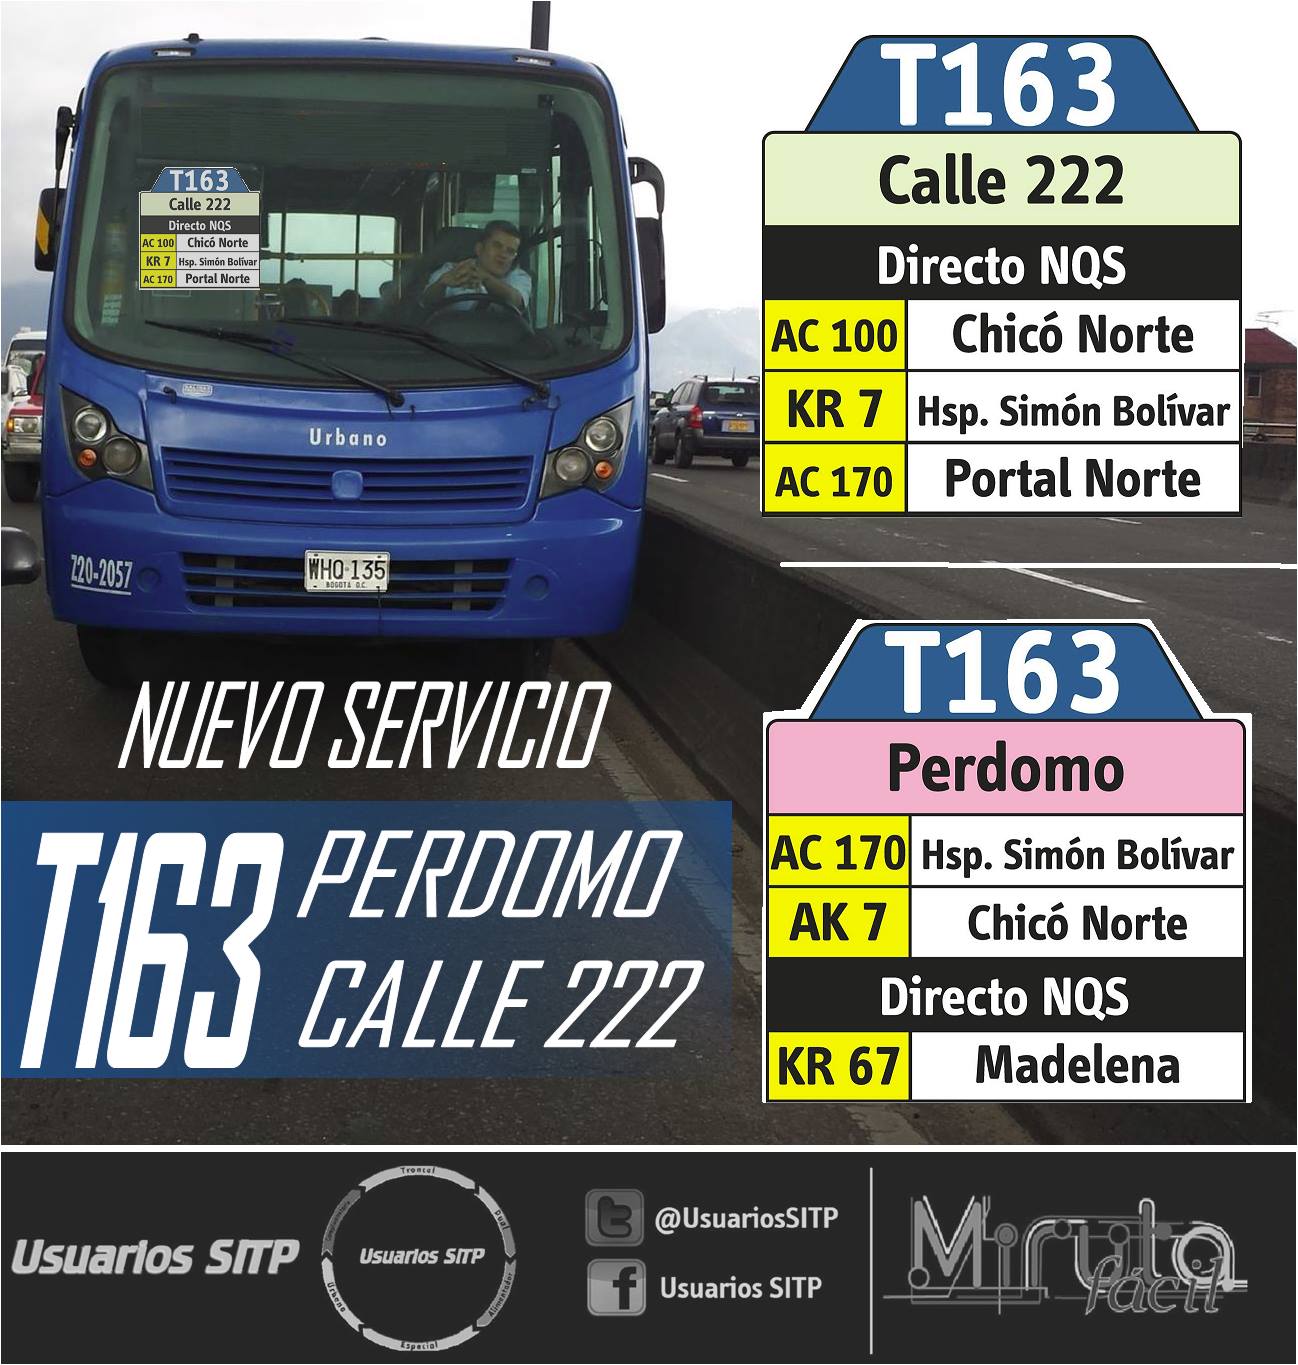 Nueva ruta urbana T163 Perdomo - Calle 222 en abril